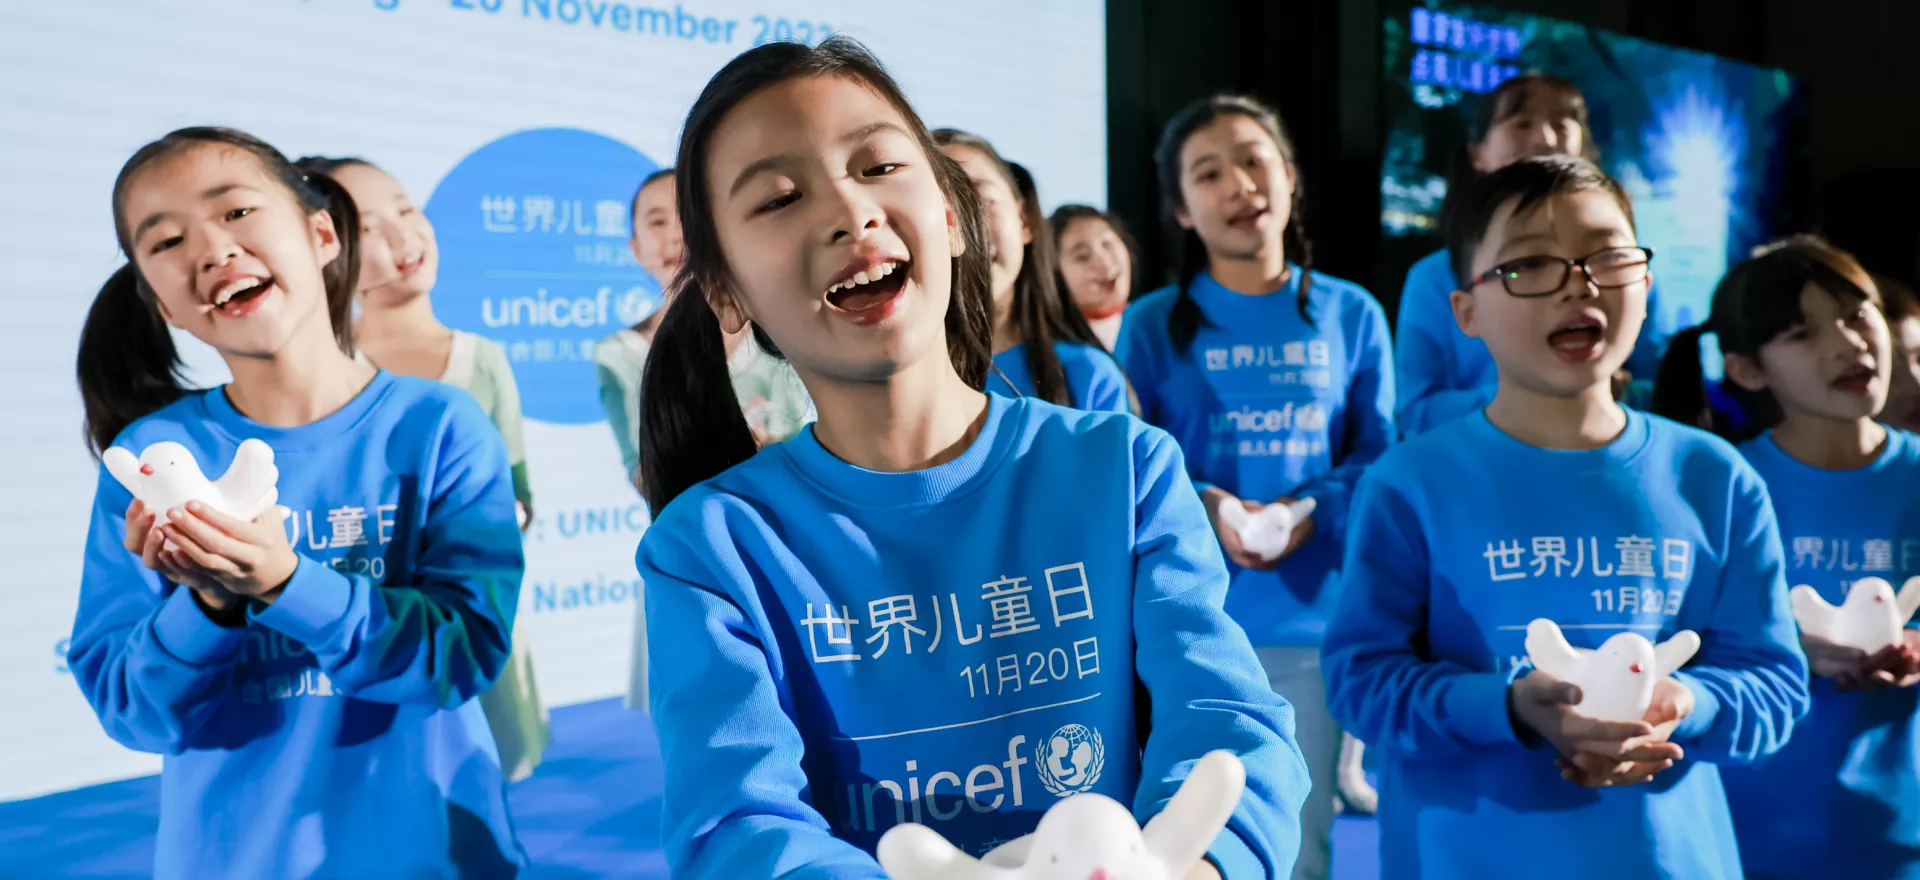 2023年11月20日，在由联合国儿童基金会驻华办事处于北京主办的世界儿童日活动上，中国儿童中心艺术团的孩子们表演由联合国儿童基金会大使王源创作的世界儿童日主题曲《在未来》。